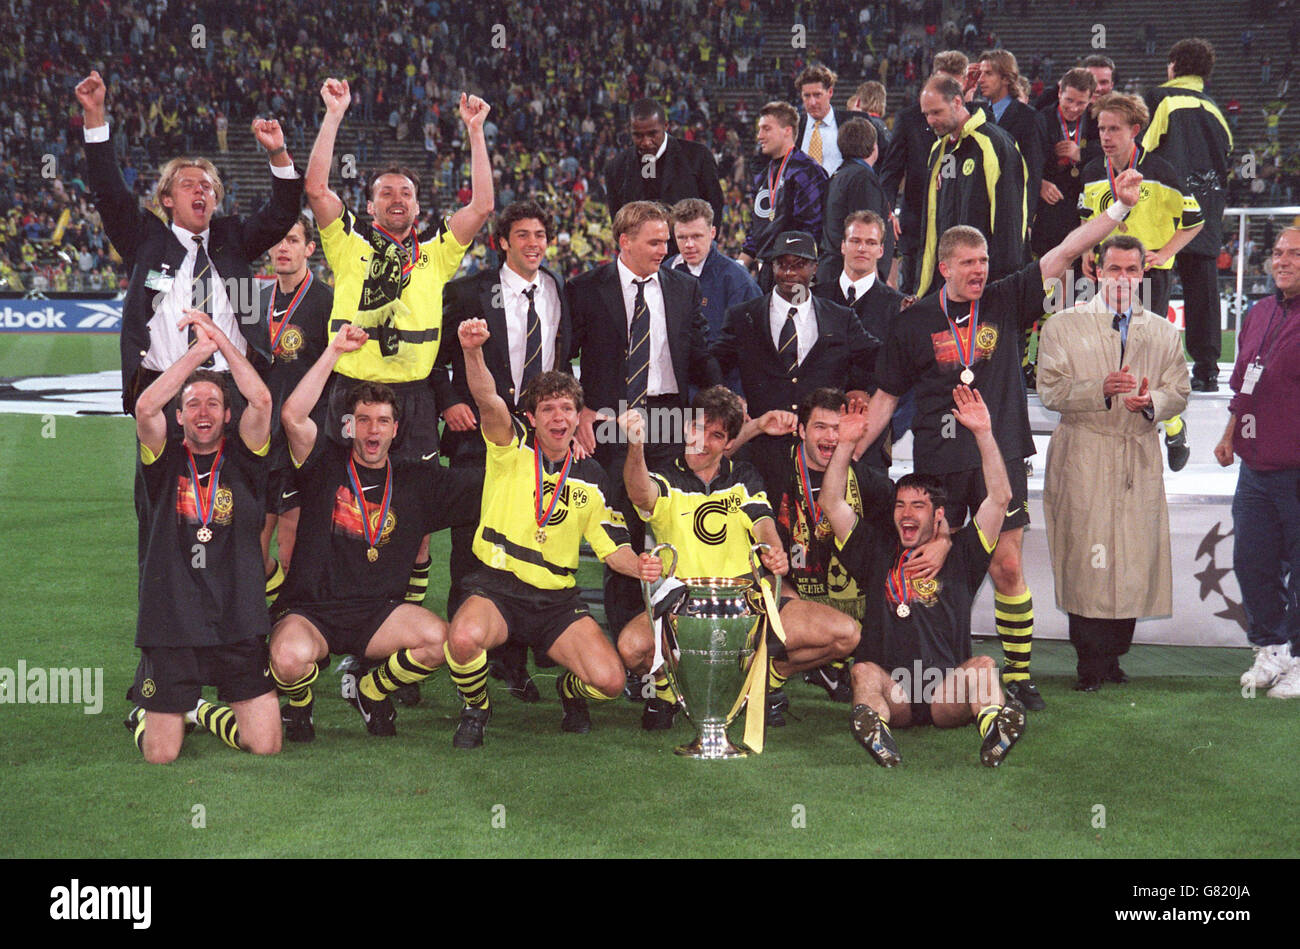 Borussia Dortmund fêtez avec la coupe de la Ligue des champions de l'UEFA. Parmi les joueurs figurent Paul Lambert, Michael Zorc, Andreas Moller et Karl-Heinz Riedle (derrière le trophée). Banque D'Images